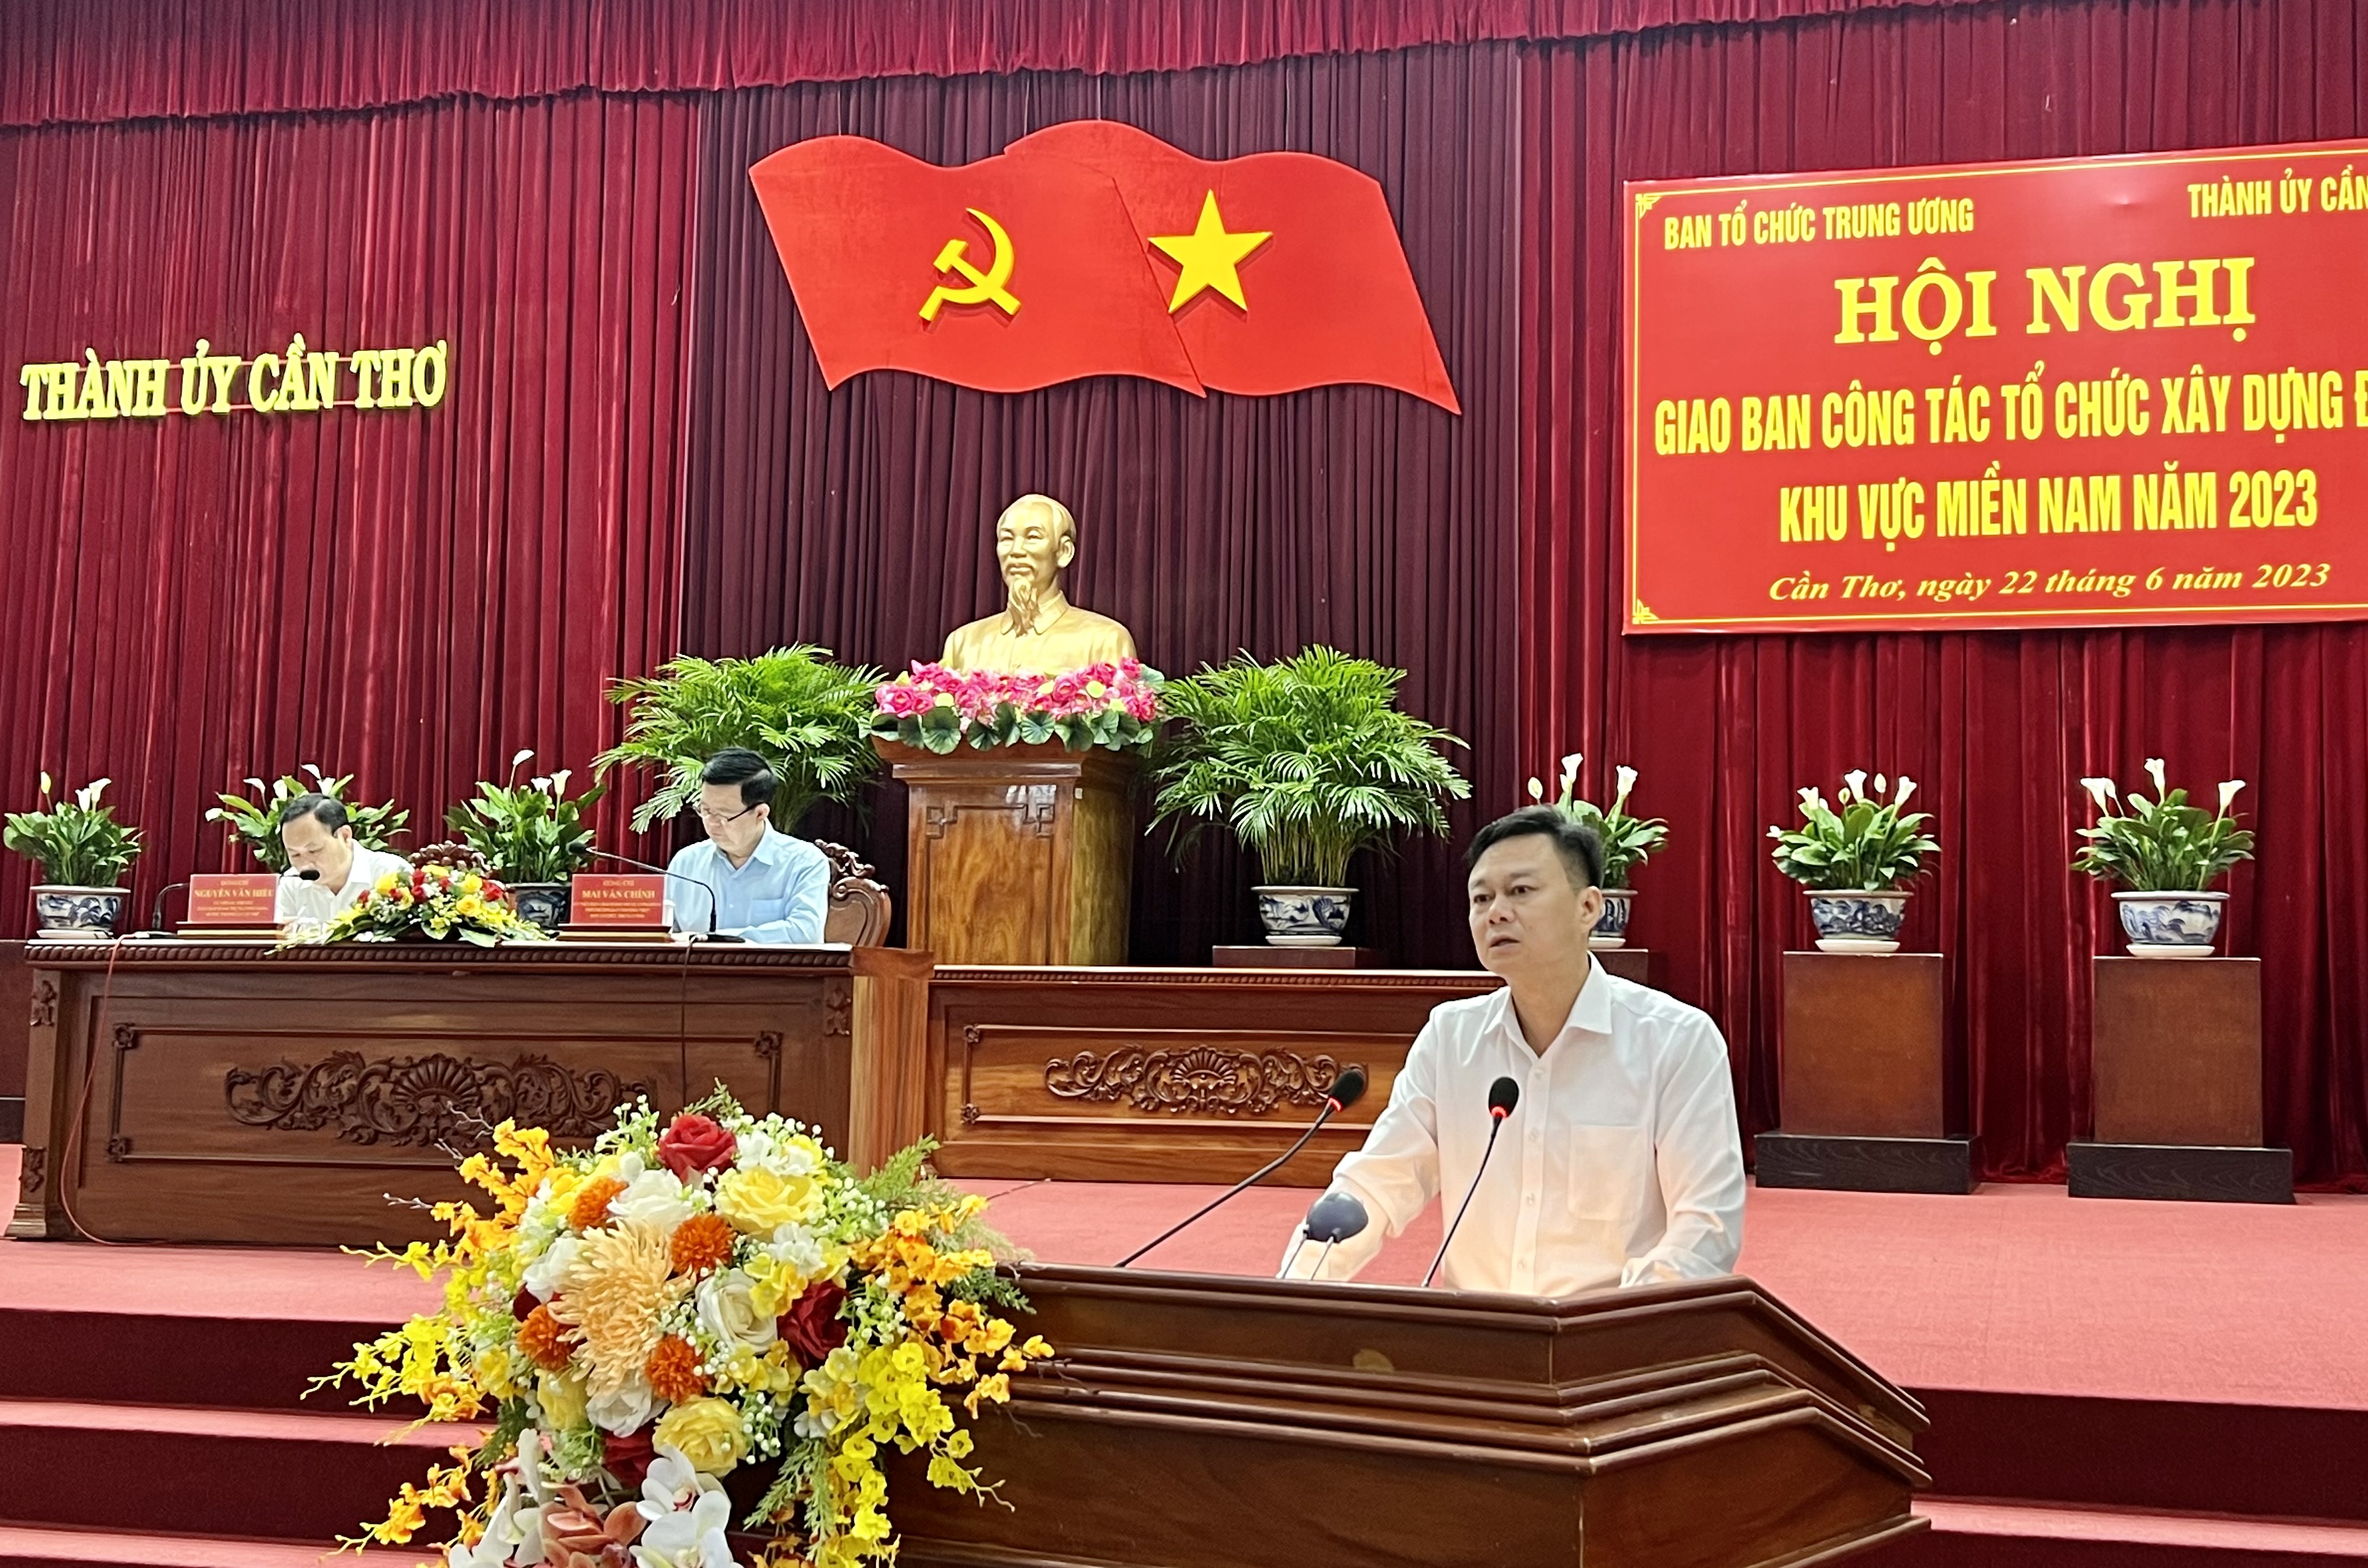 Đồng chí Nguyễn Văn Phóng， Vụ Trưởng Vụ Địa phương III， Ban Tổ chức Trung ương trình bày dự thảo báo cáo.